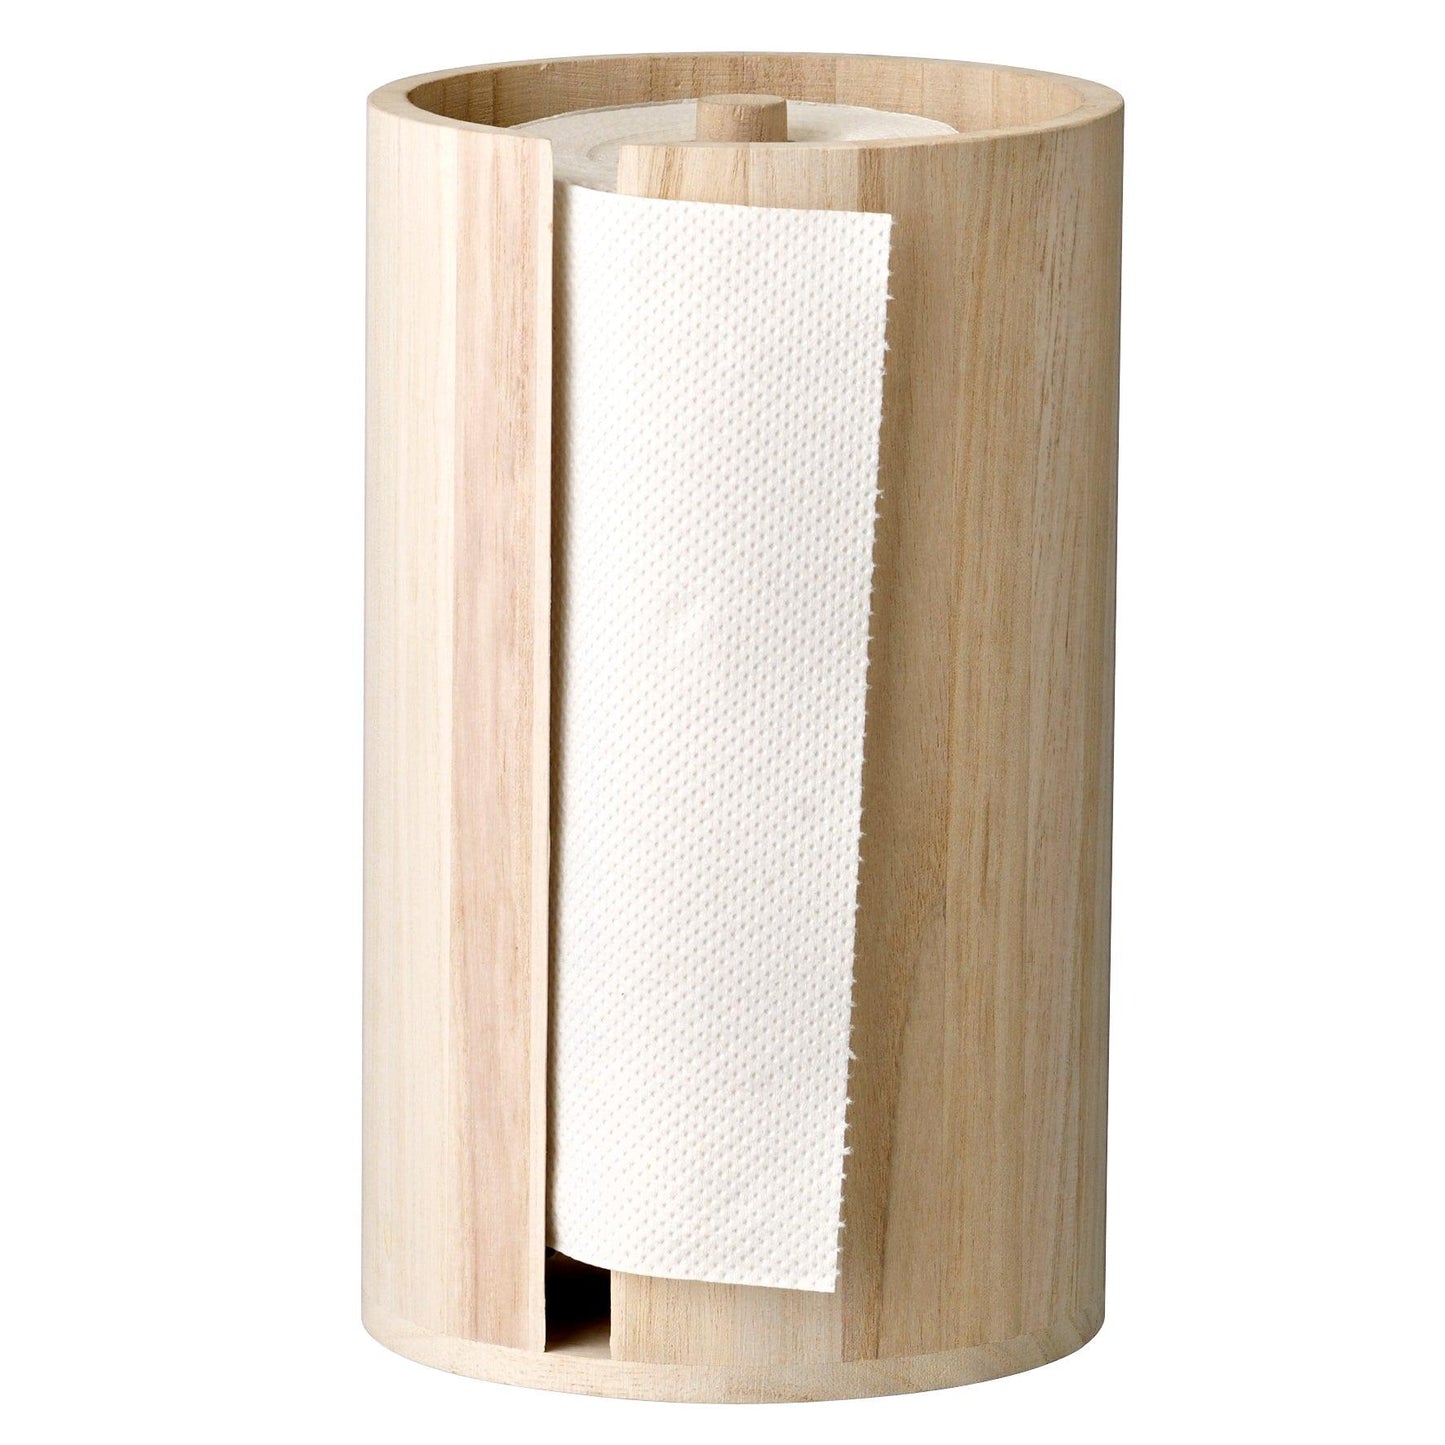 Wood Keitchen Paper